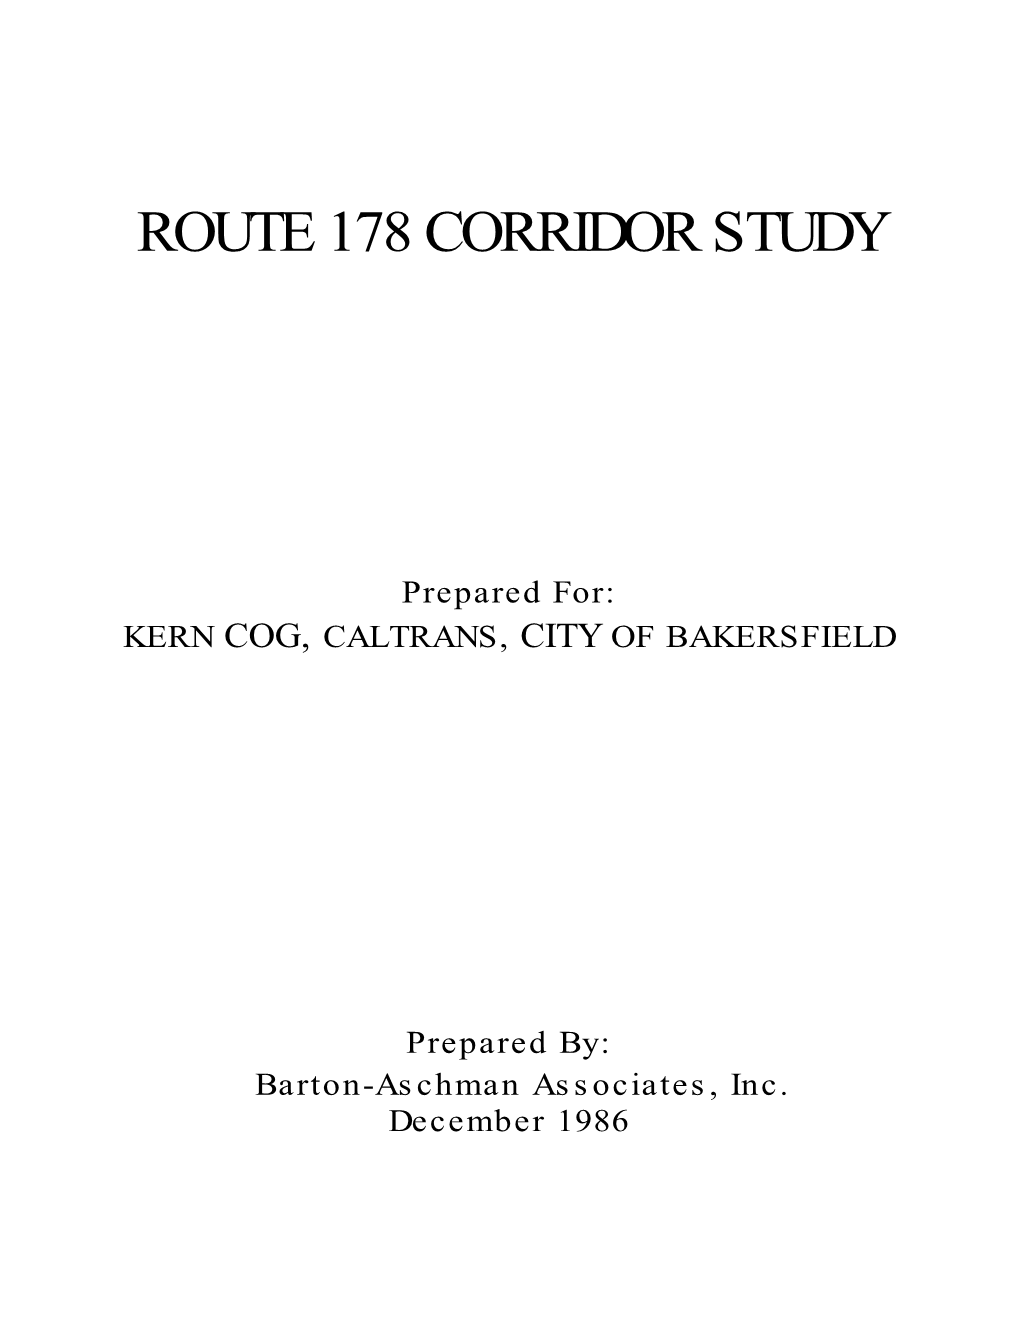 Route 178 Corridor Study